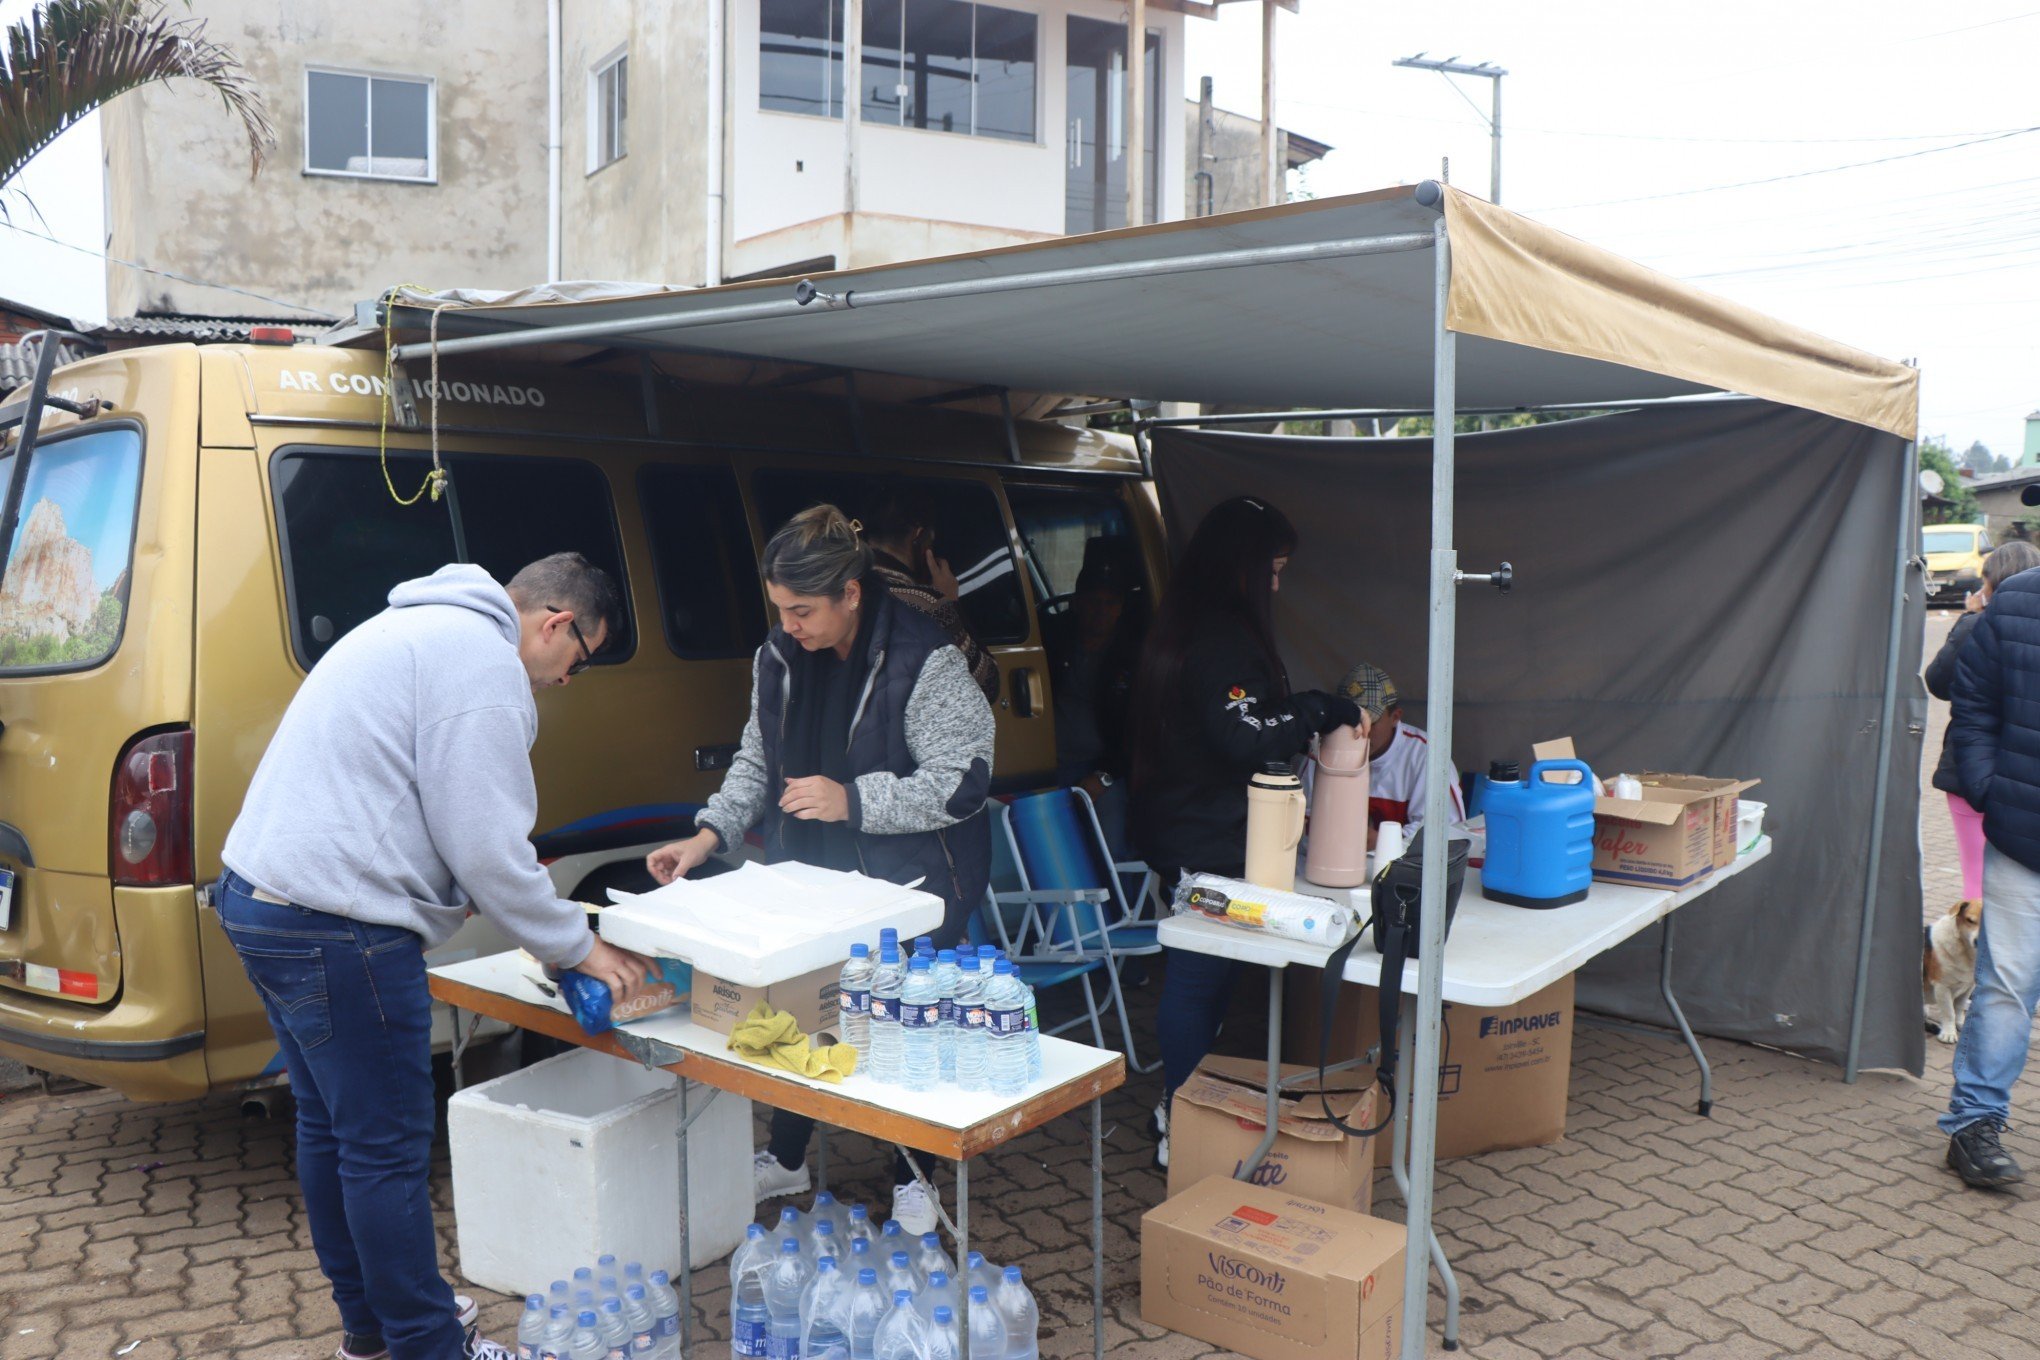 CATÁSTROFE NO RS: "Estamos nos revezando para ajudar", grupo de voluntários distribui refeições há 14 dias para abrigados